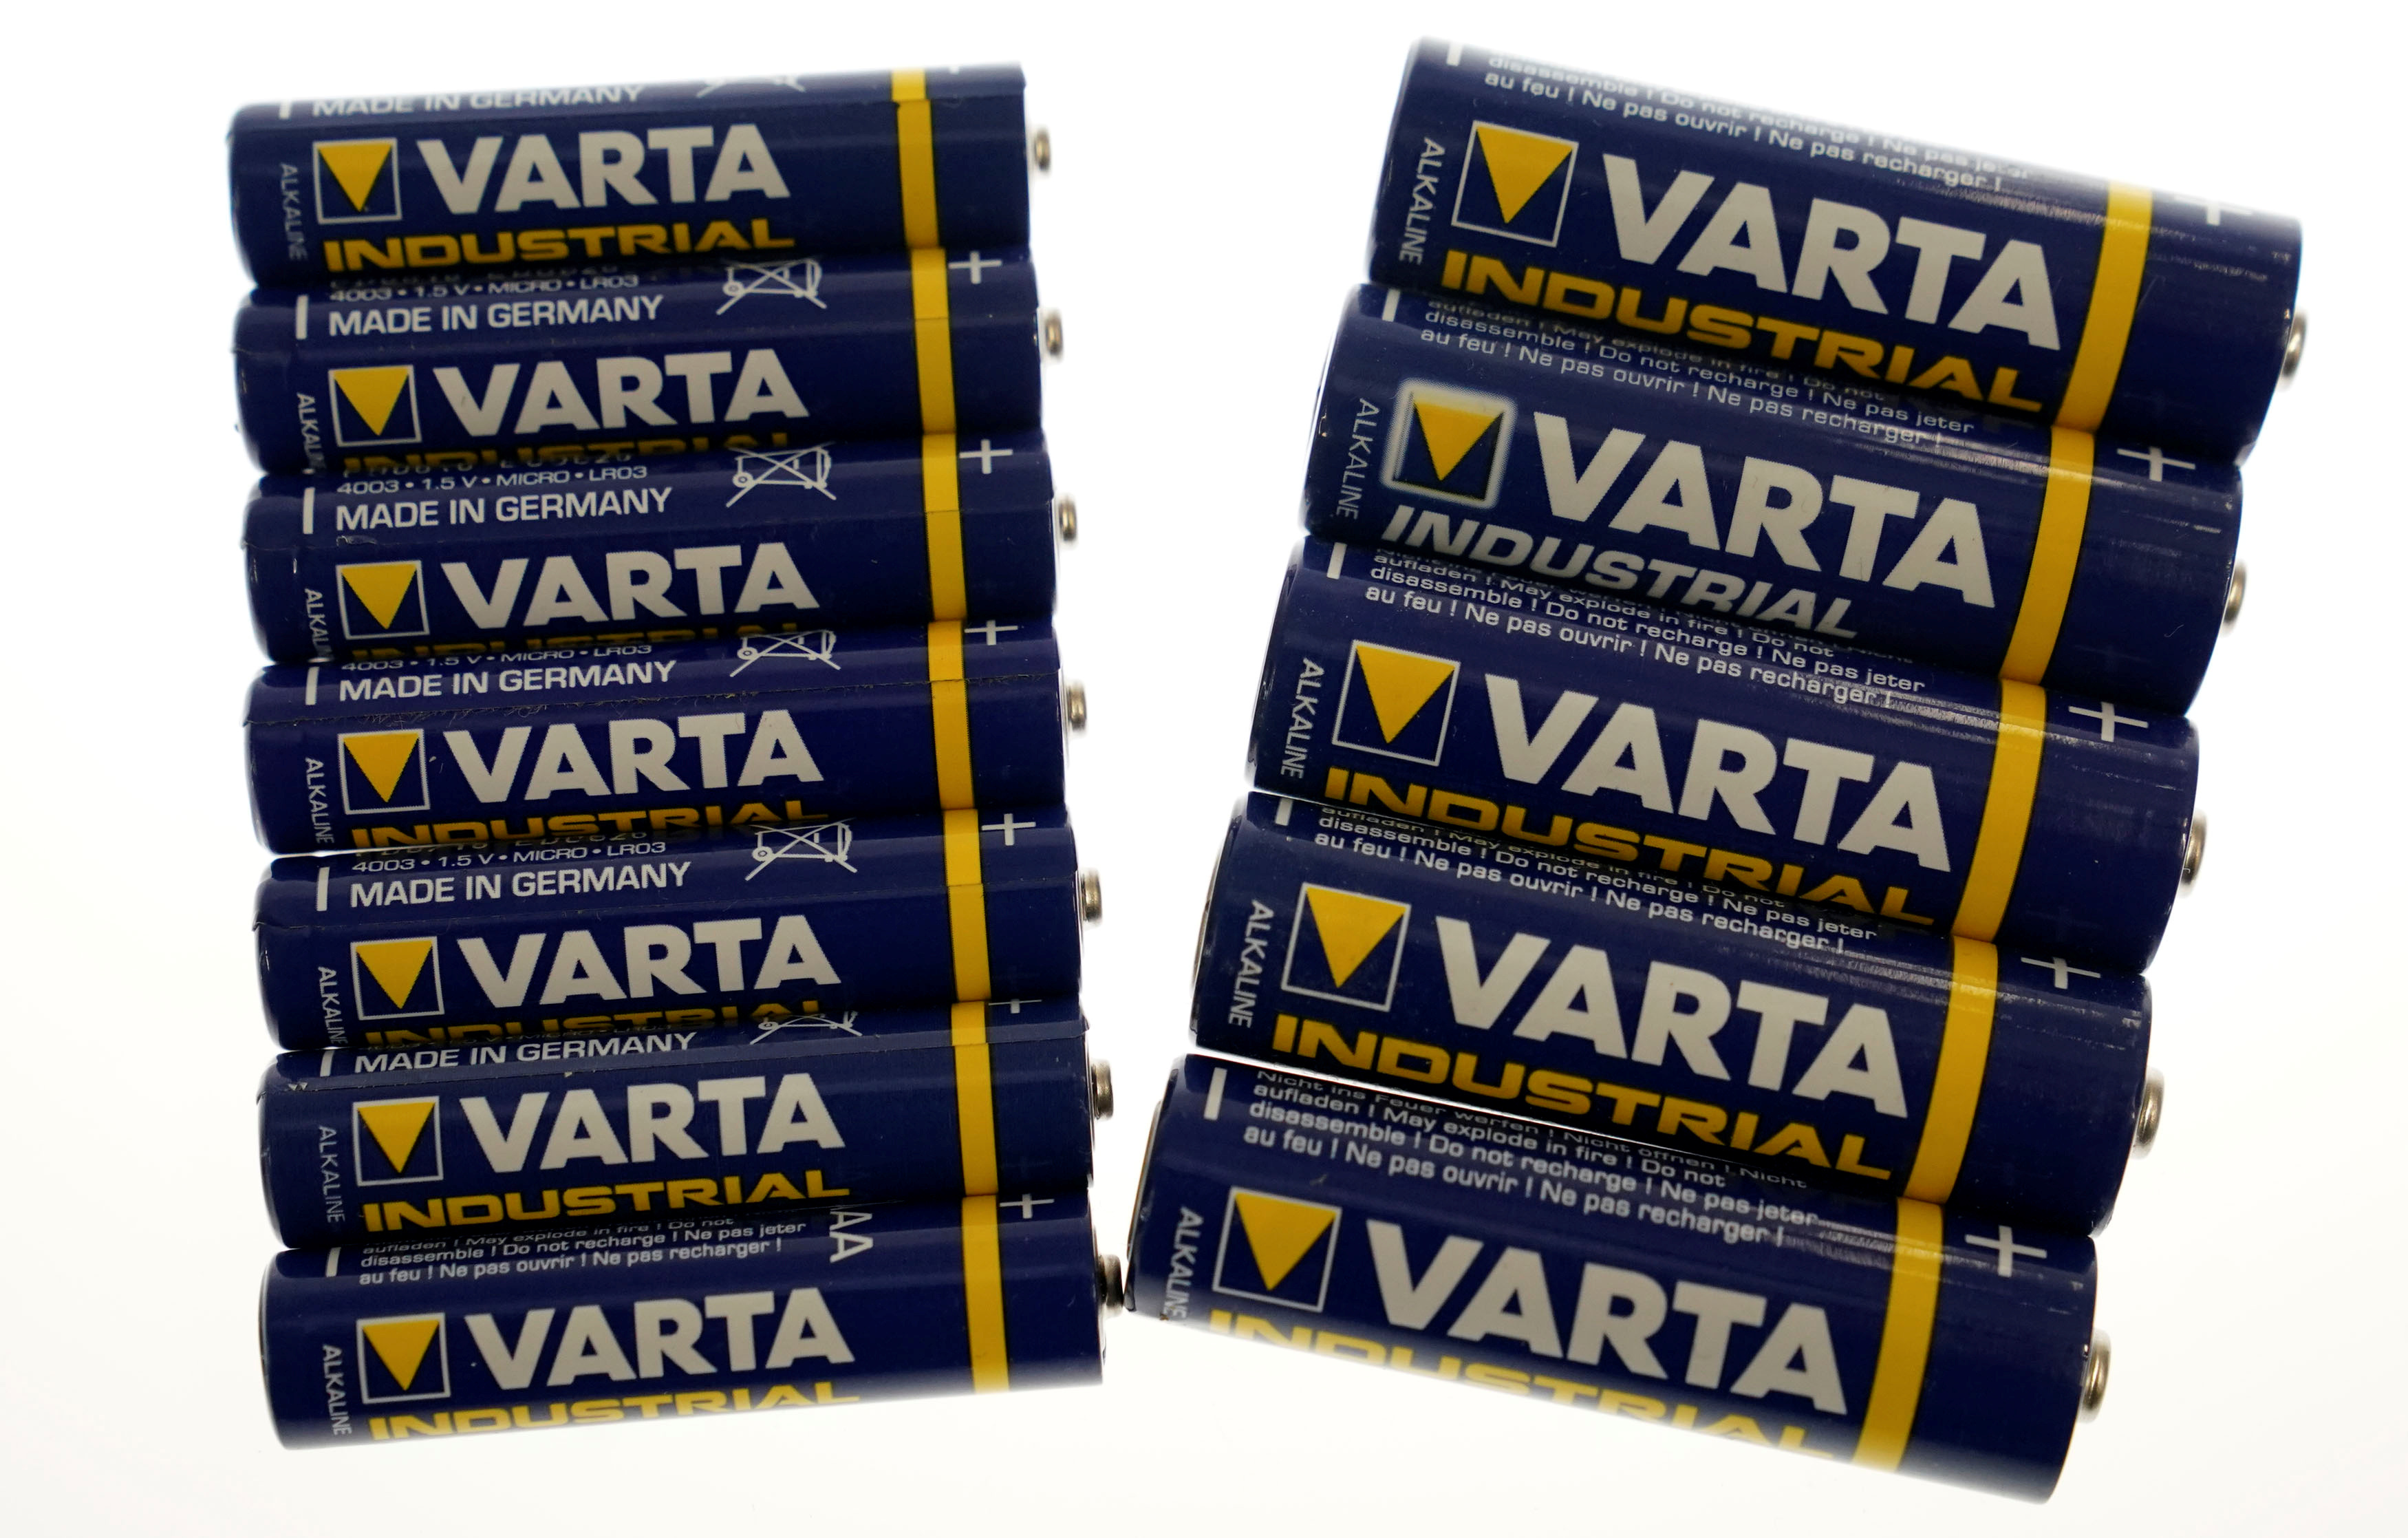 VARTA Battery World